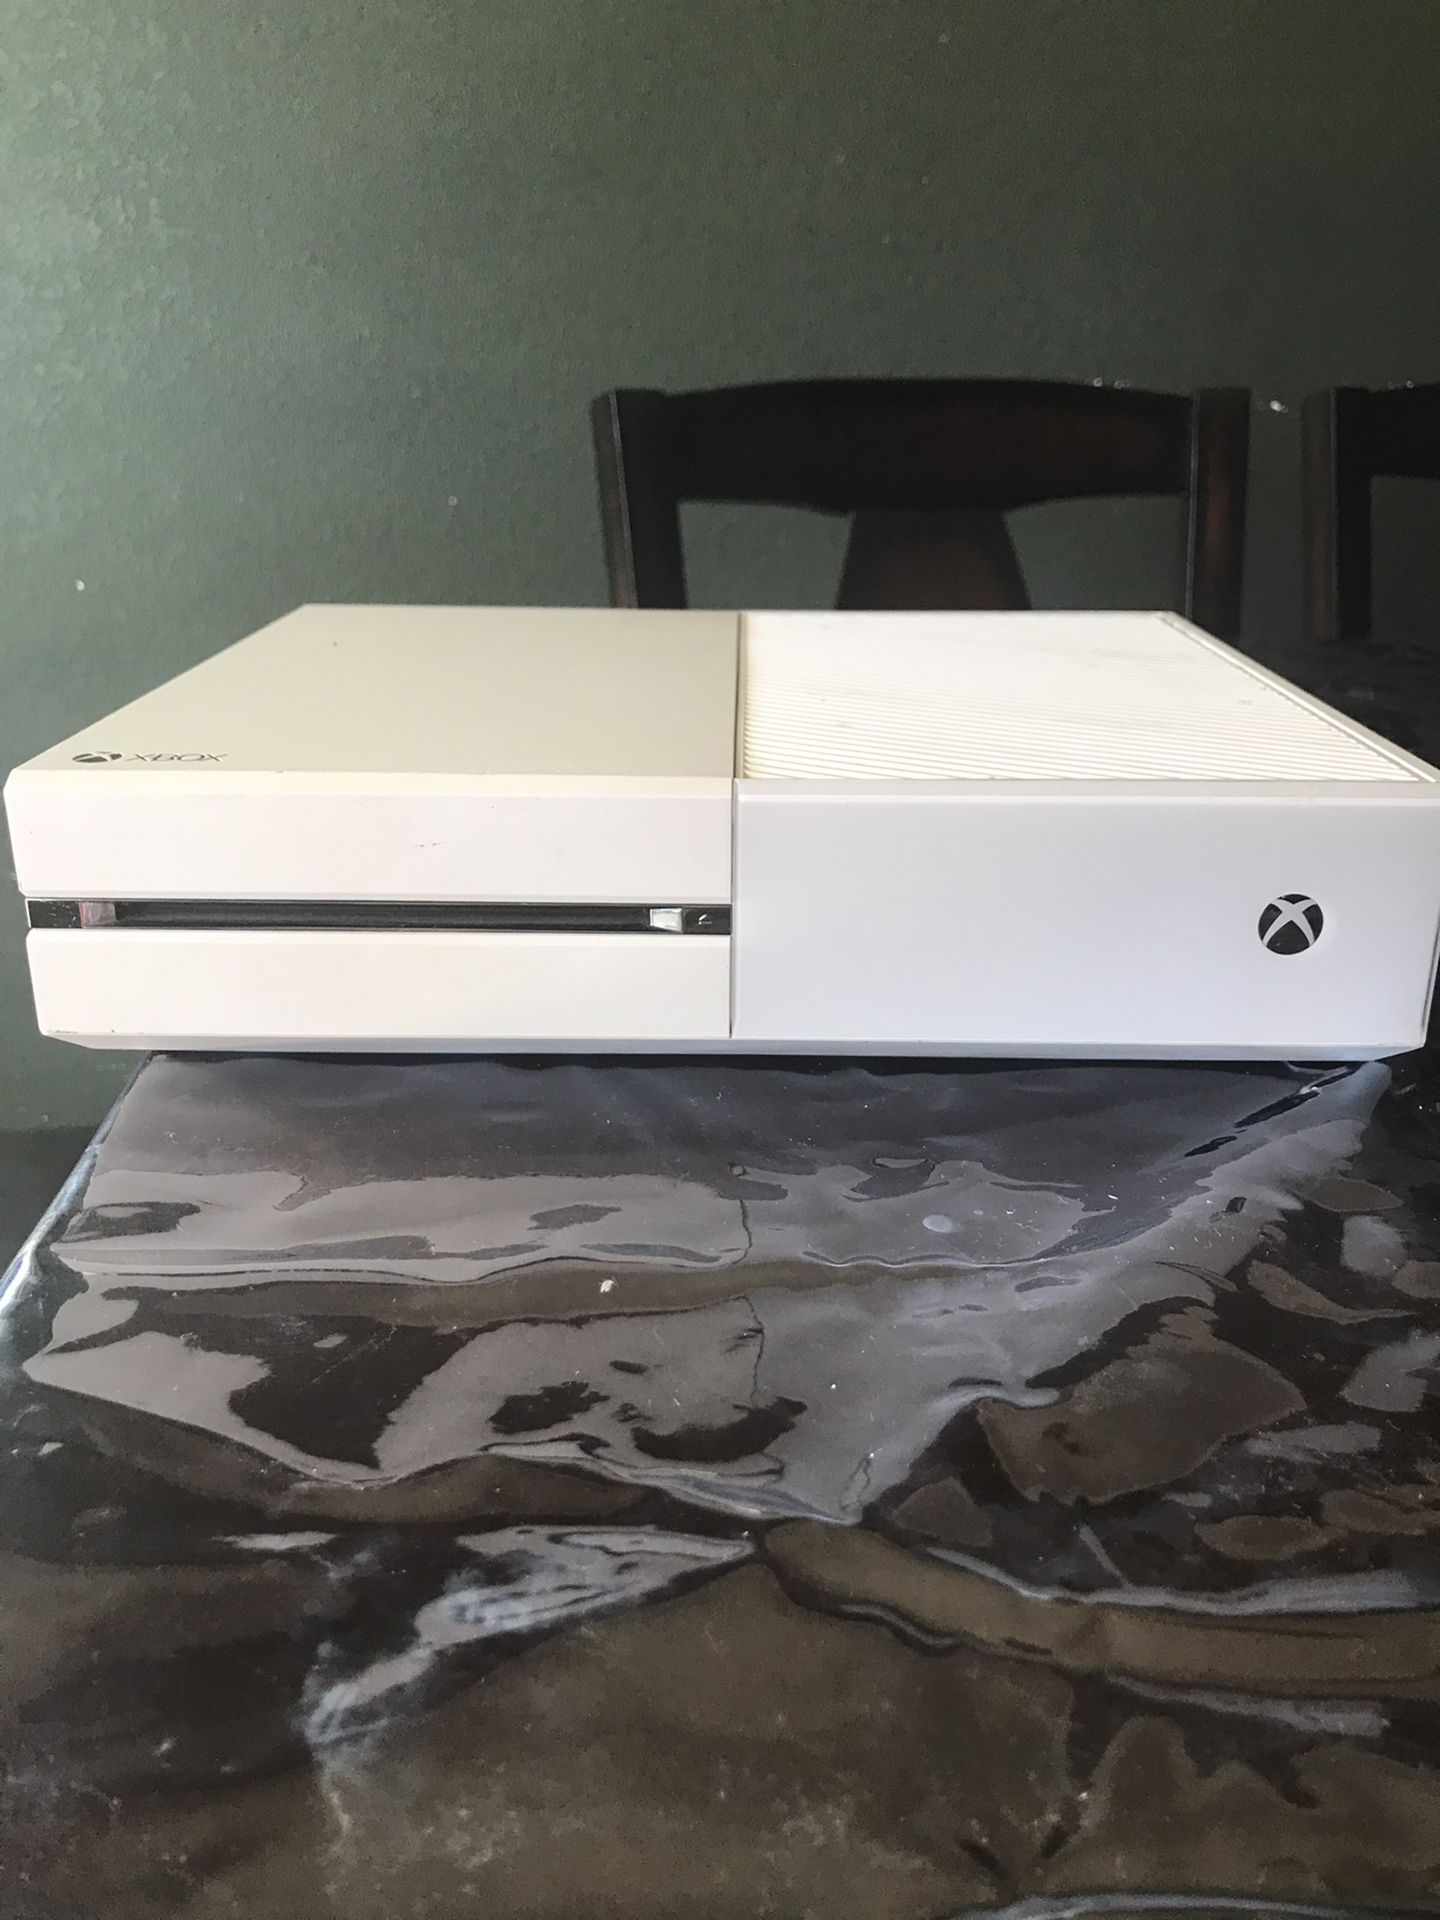 Xbox One (White)